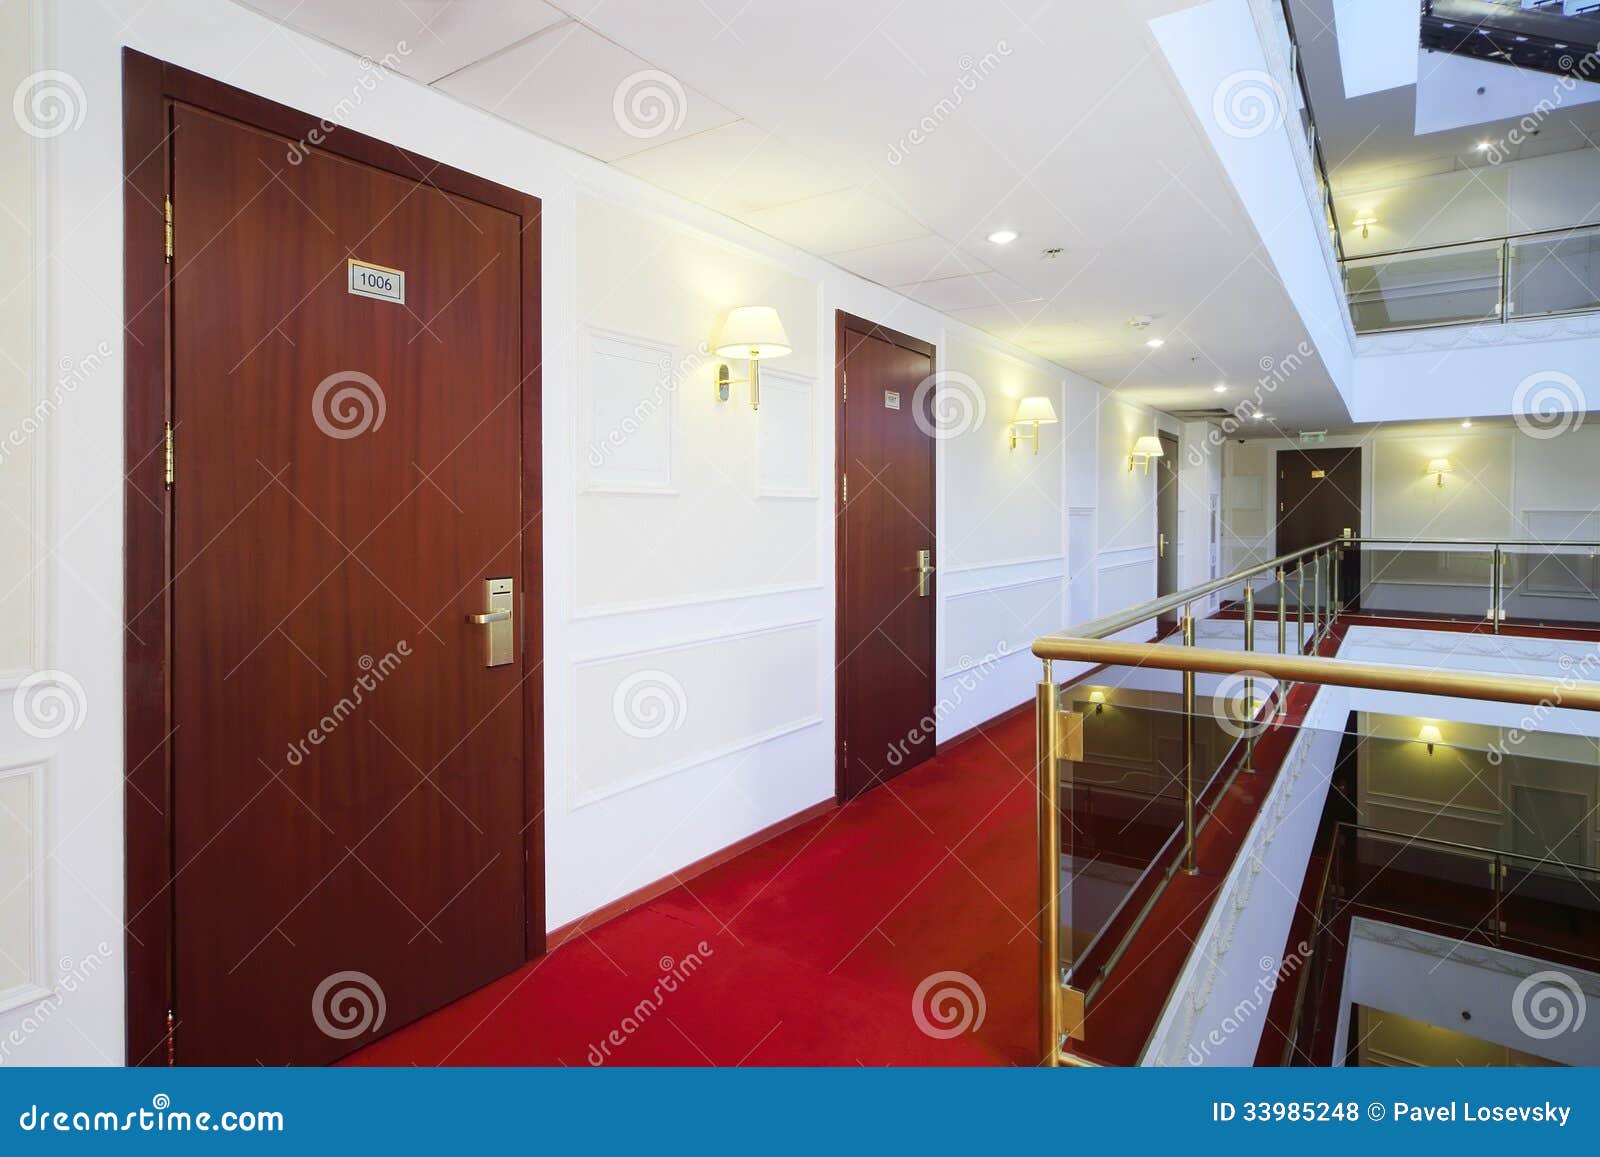 wooden doors, red carpet on floor and handrails of balconies